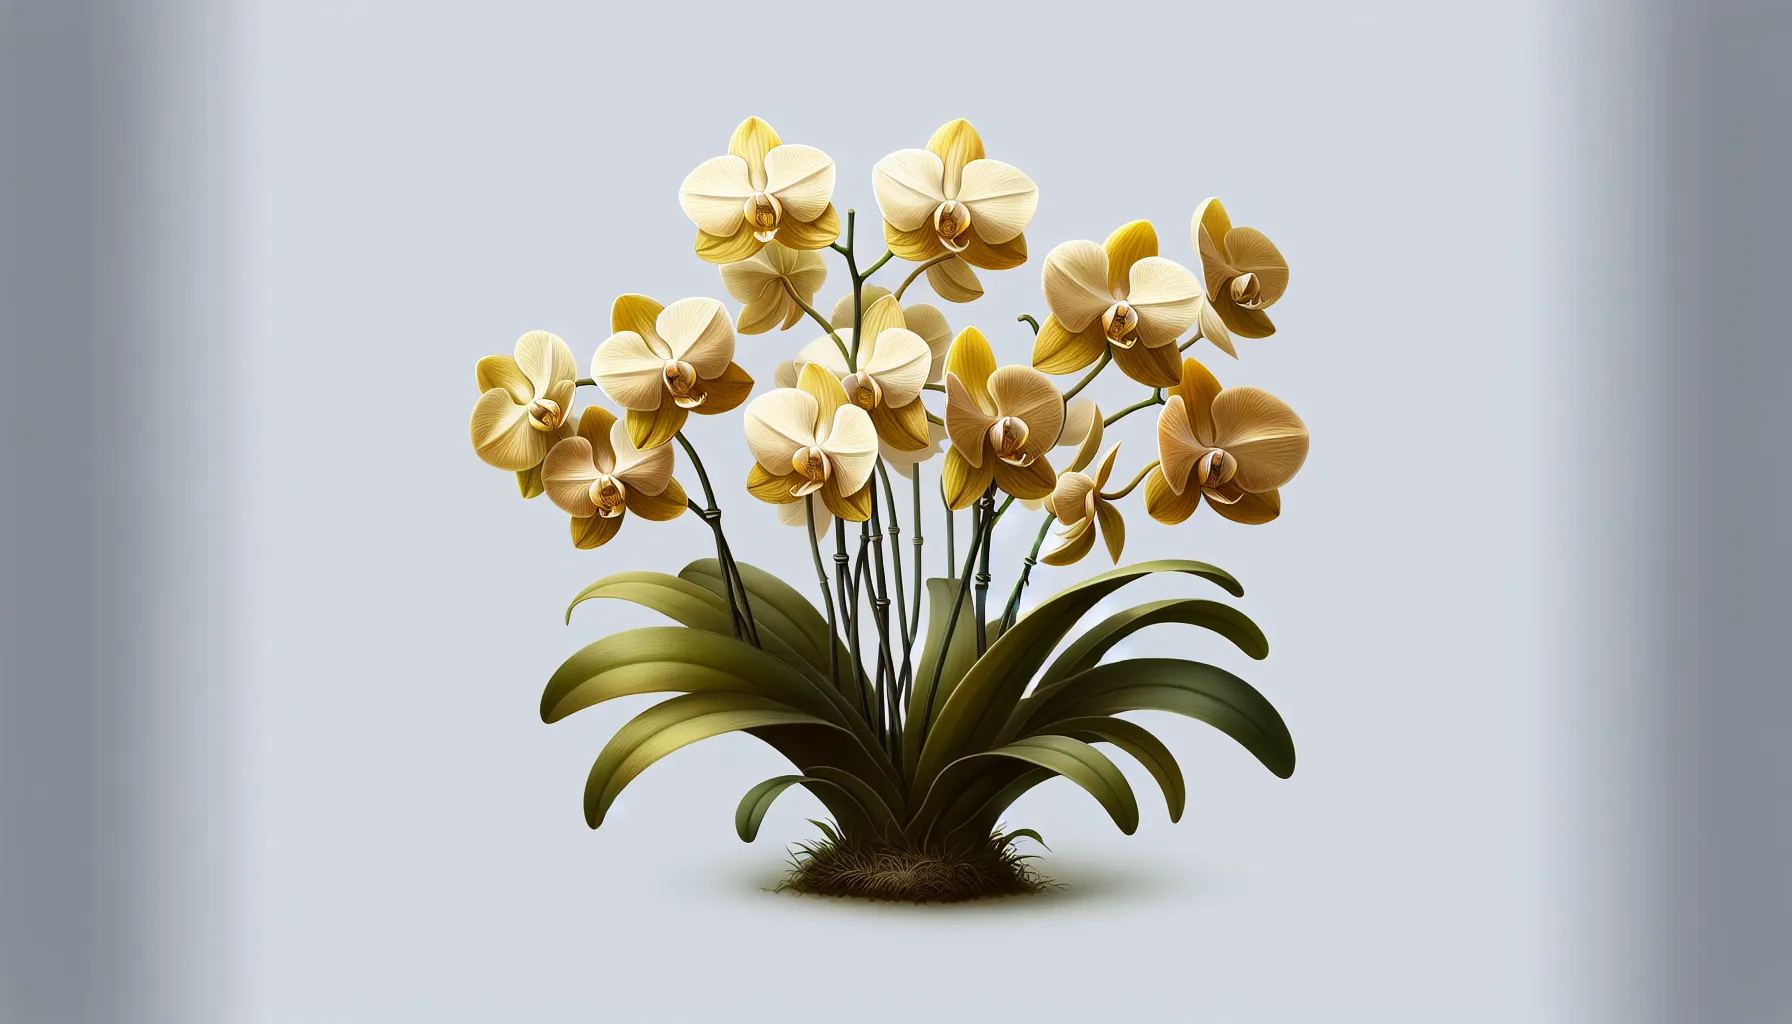 Orquídea con hojas amarillentas debido a un riego excesivo